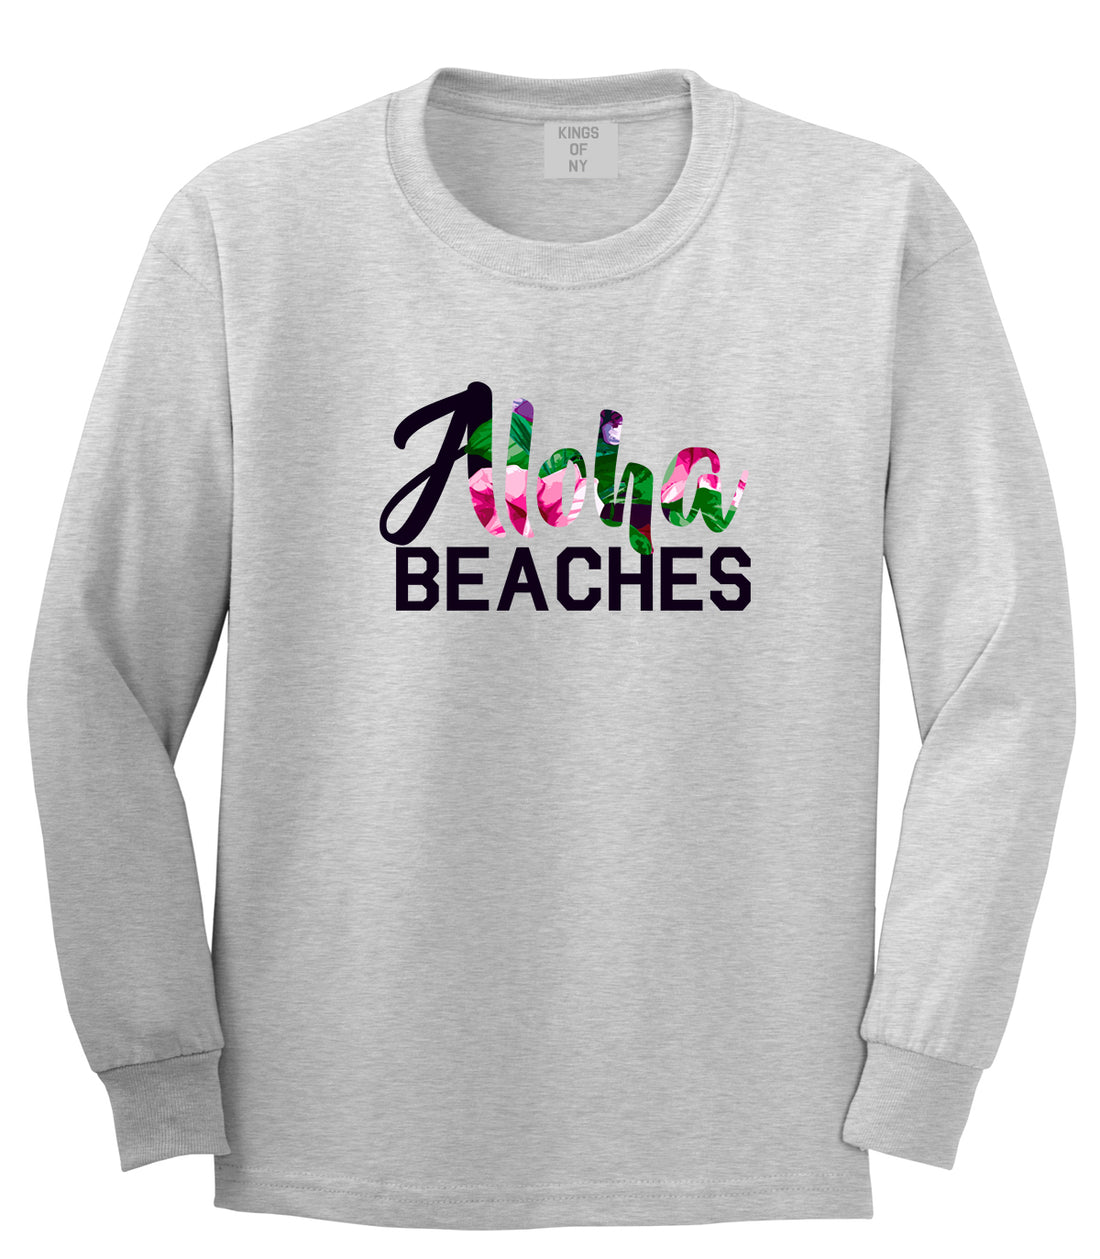 Aloha Beaches Grey Long Sleeve T-Shirt by Kings Of NY